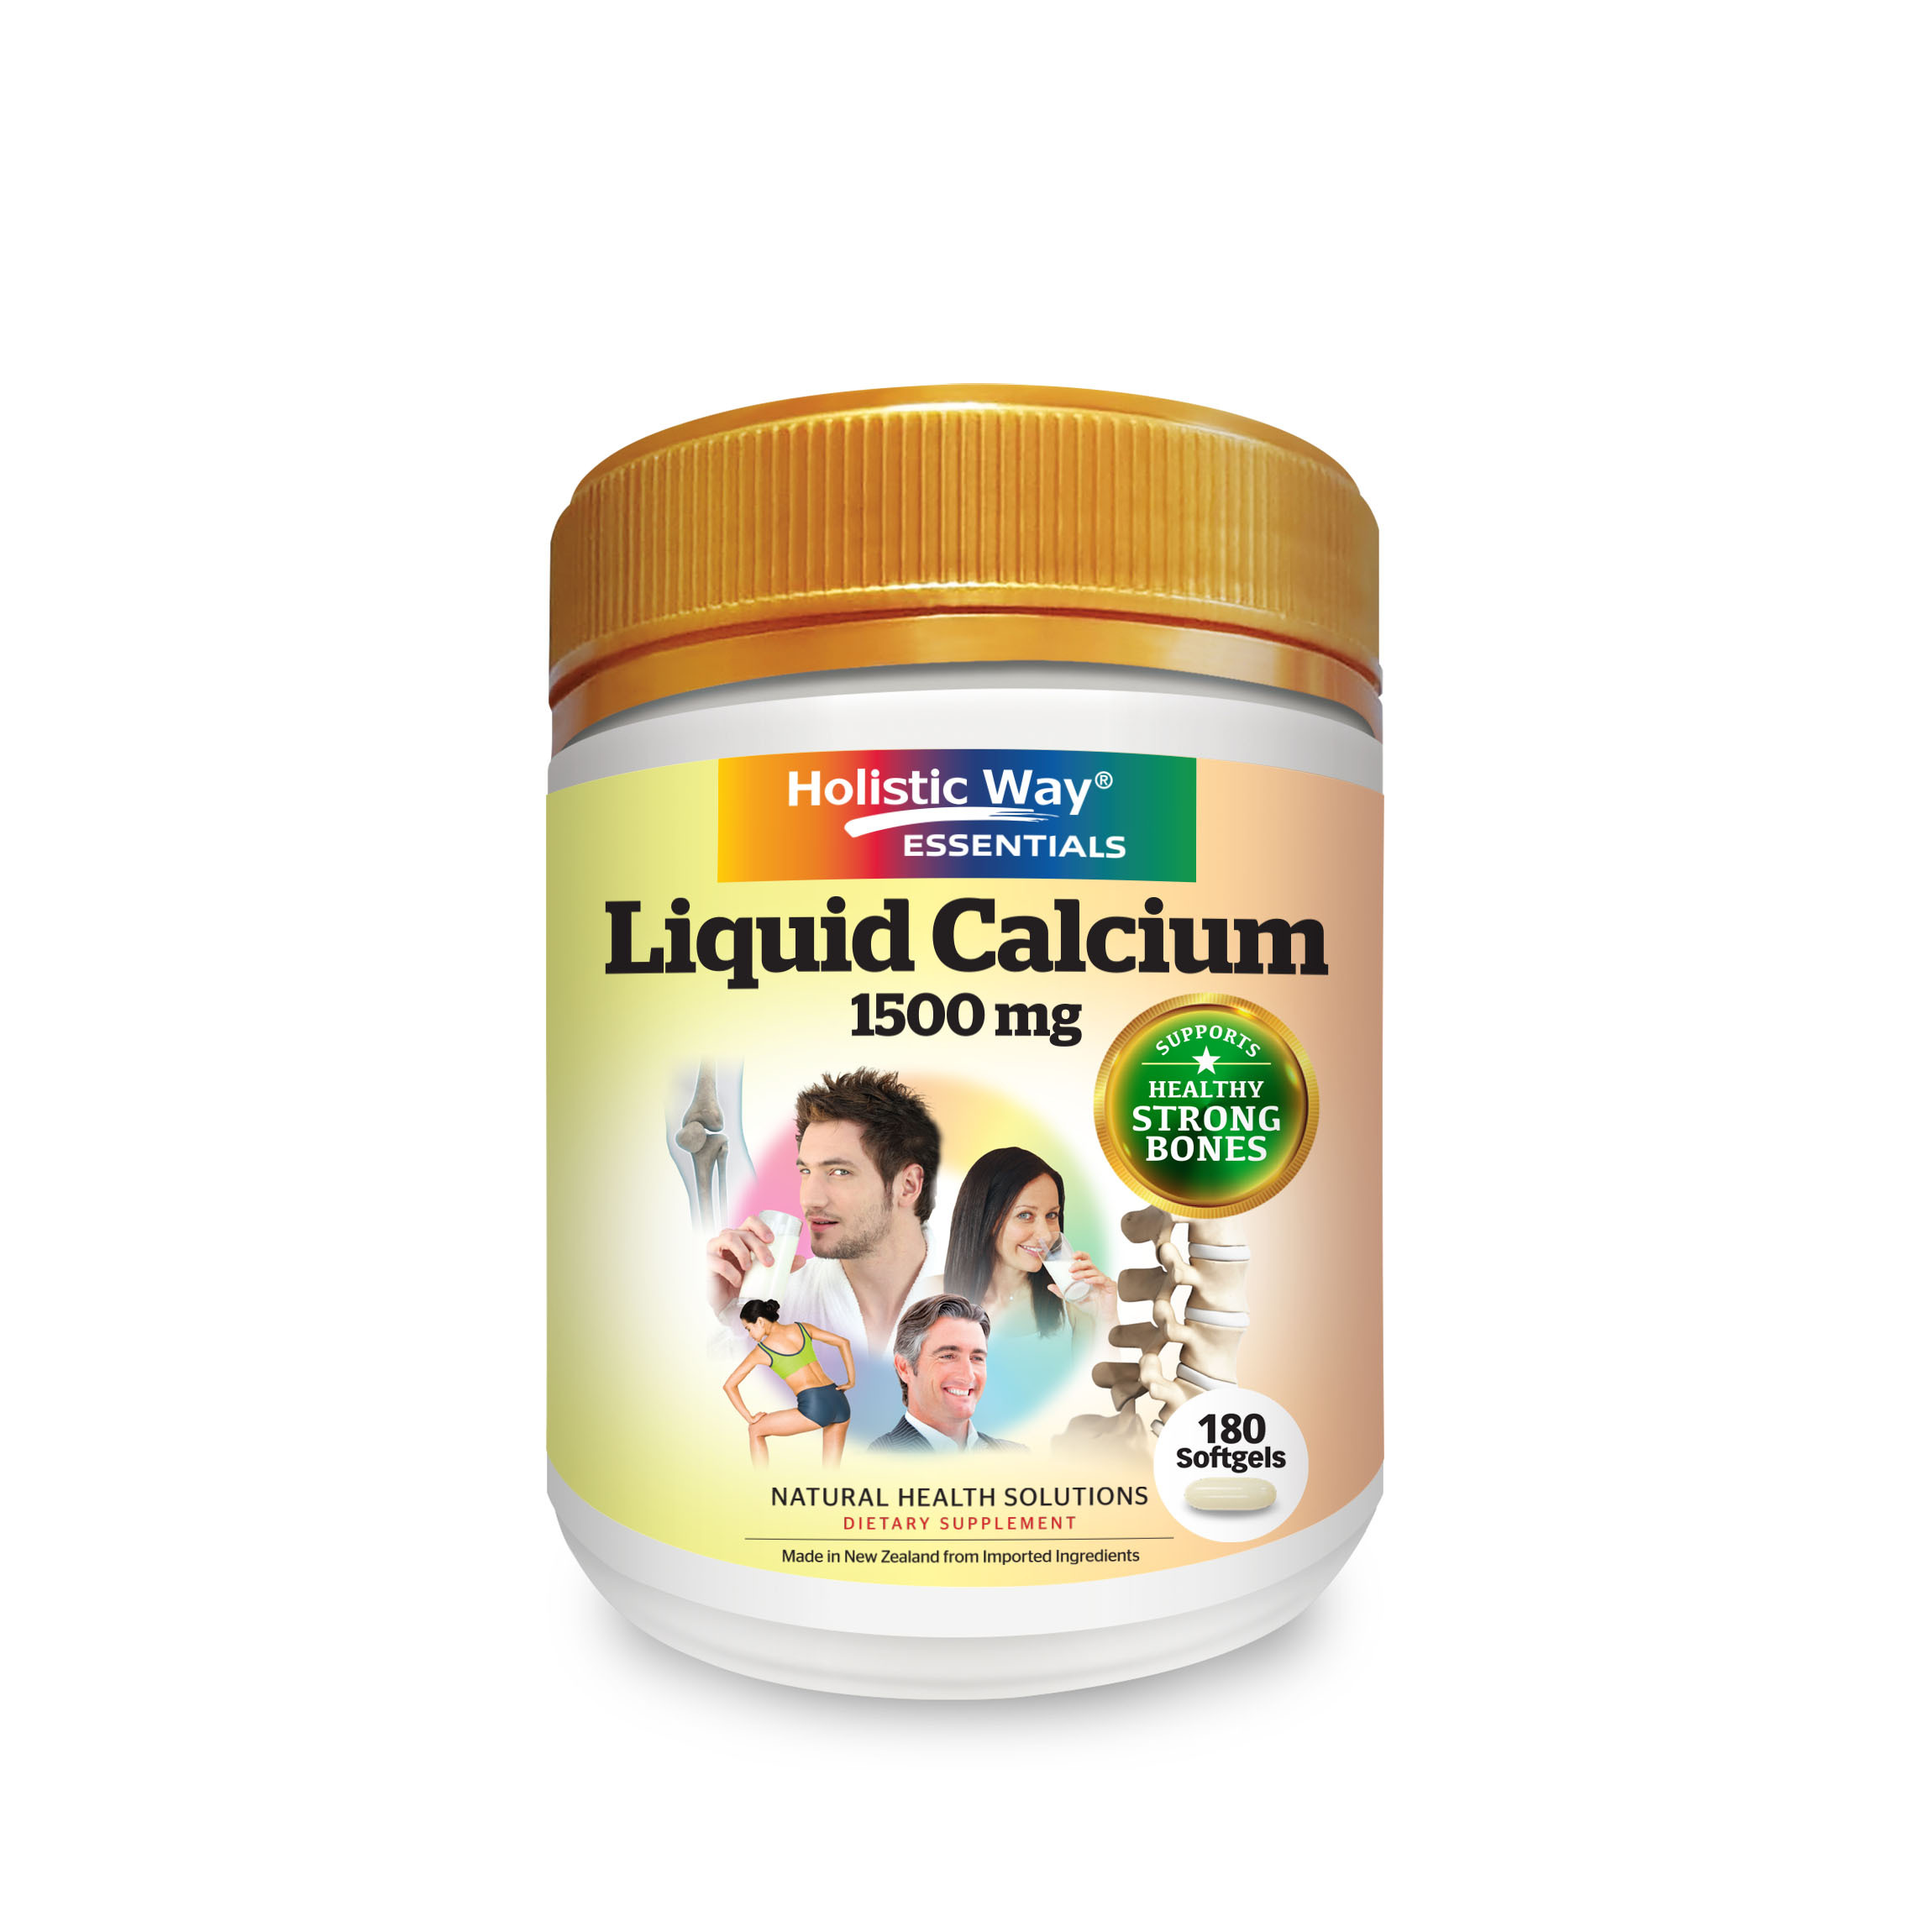 Holistic Way Essentials Liquid Calcium 1500mg (180 Softgels) for Healthy, Strong Bones